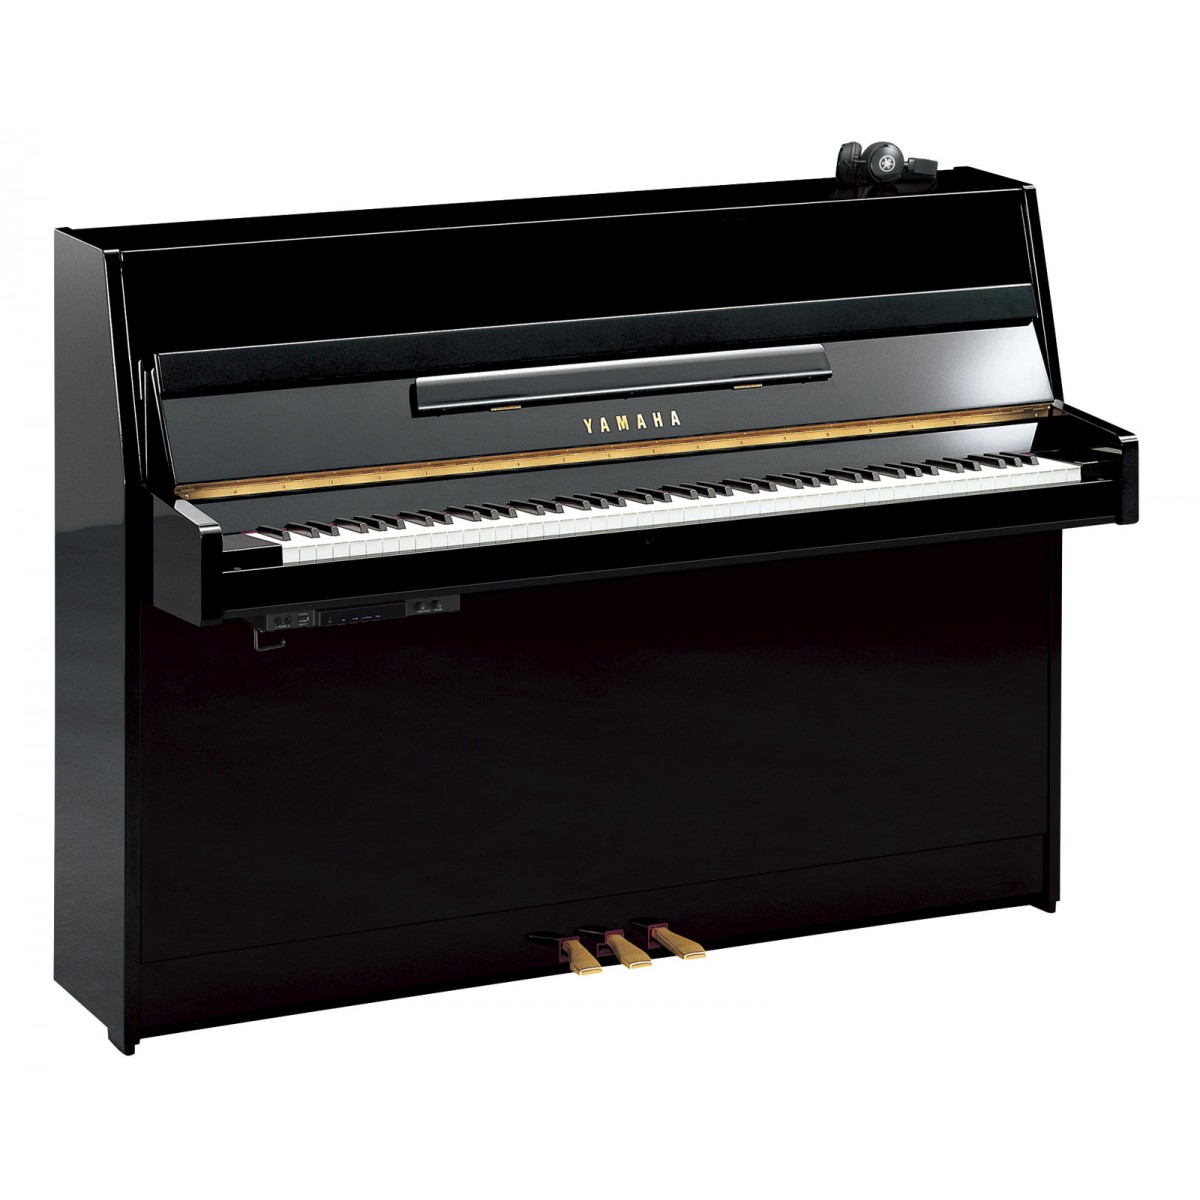 Yamaha B1 SC2 - Silent Klavier mieten mit Anrechnung